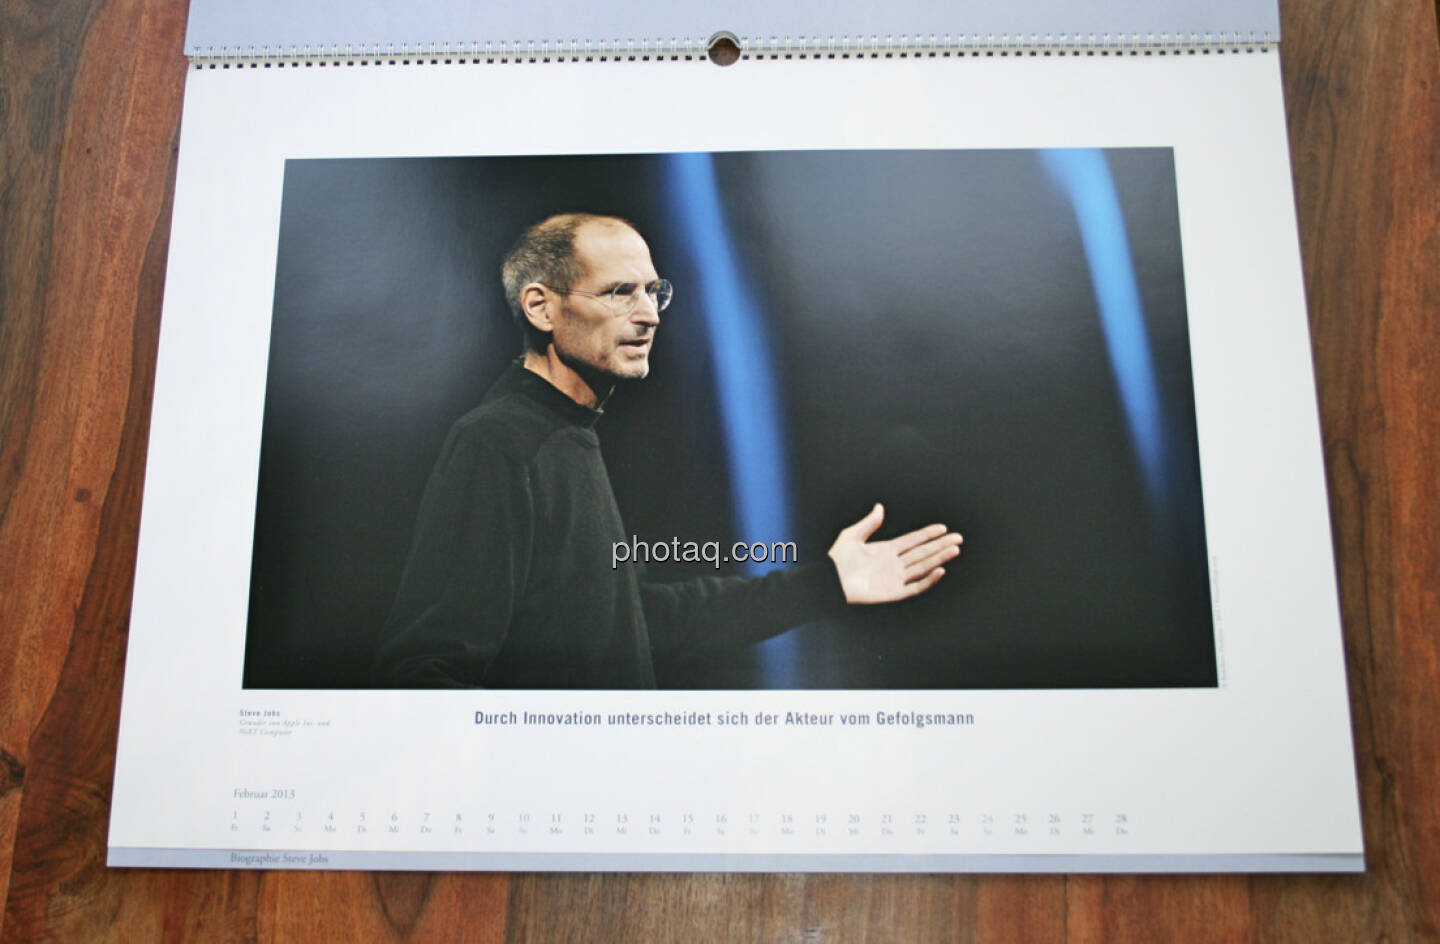 Steve Jobs, Gründer von Apple Inc. und NeXT Computer Durch Innovation unterscheidet sich der Akteur vom Gefolgsmann ... aus dem AT&S-Kalender 2013, konzipiert und koordiniert von Martin Theyer